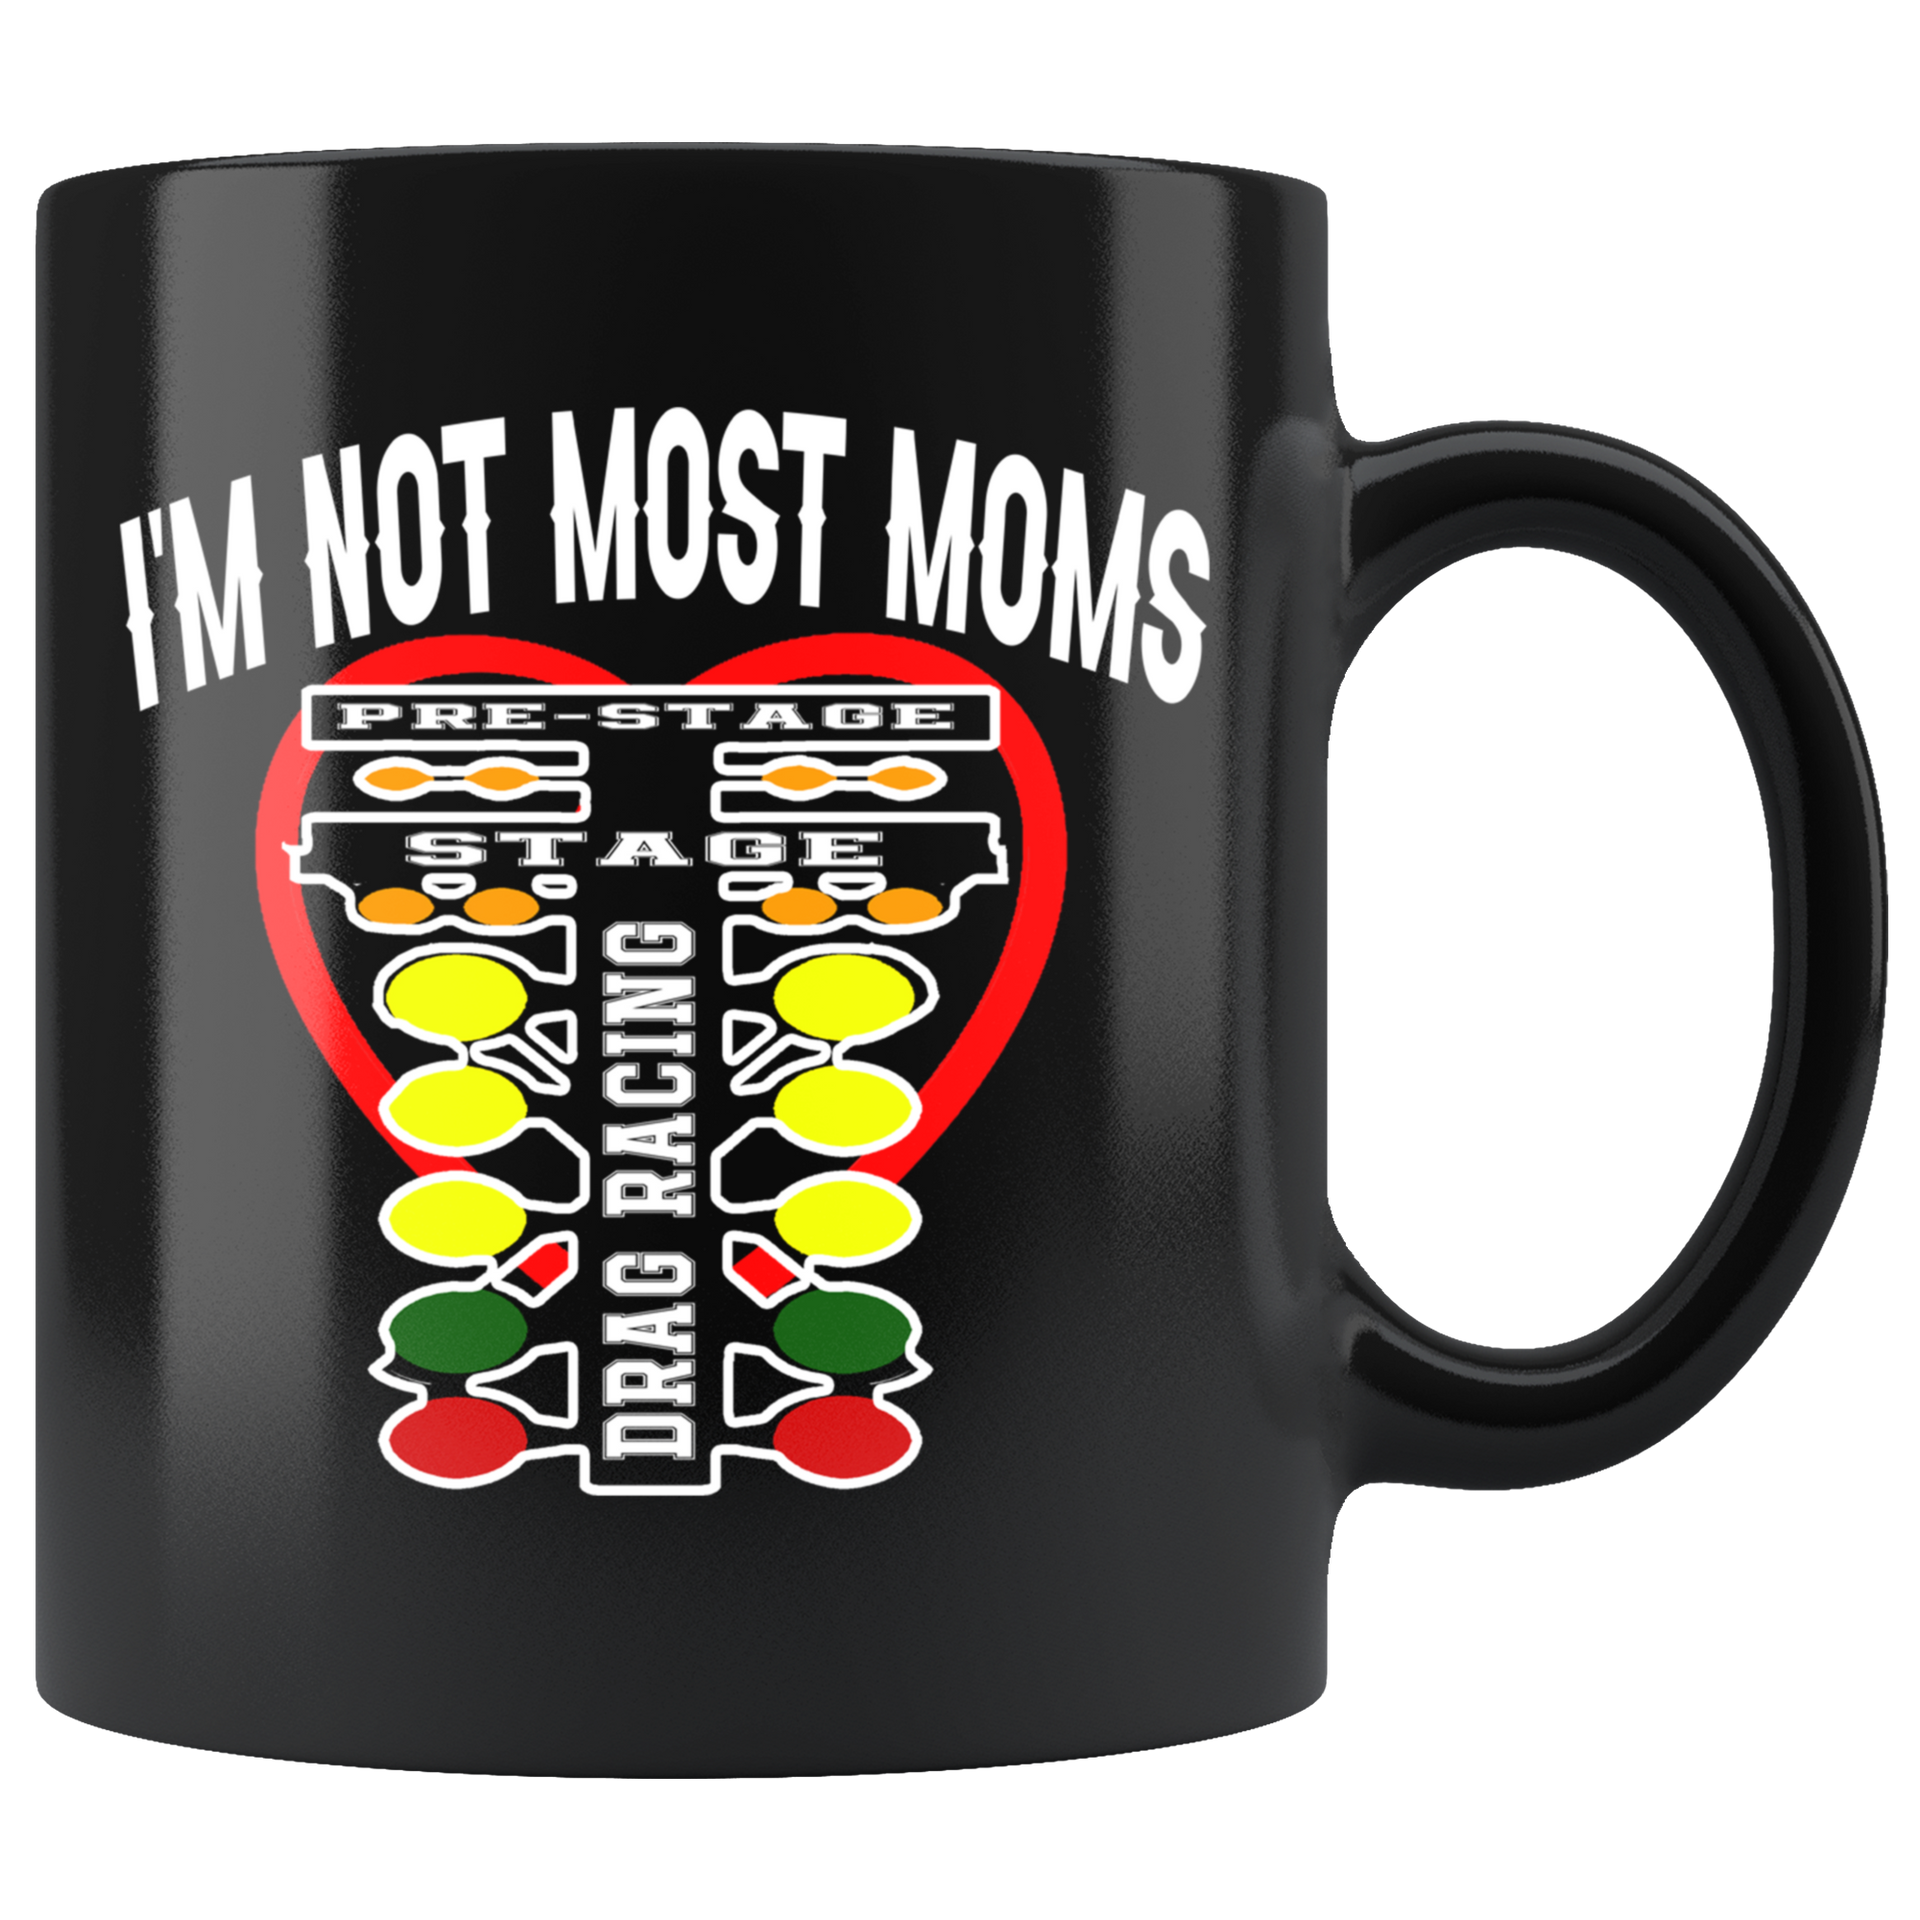 drag racing mom mug